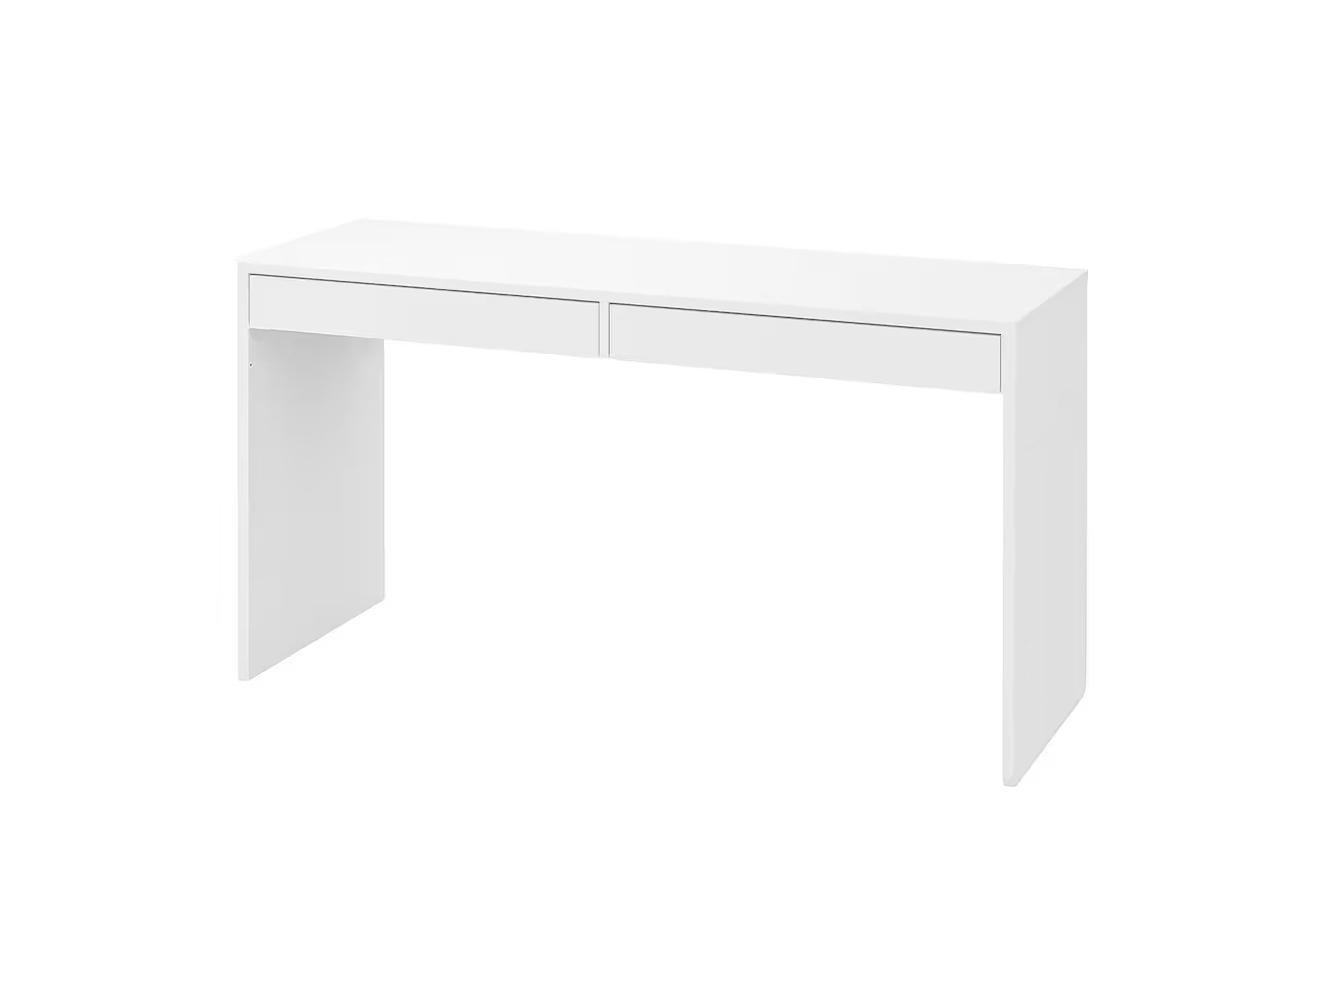 Письменный стол Мике 15 white ИКЕА (IKEA) изображение товара